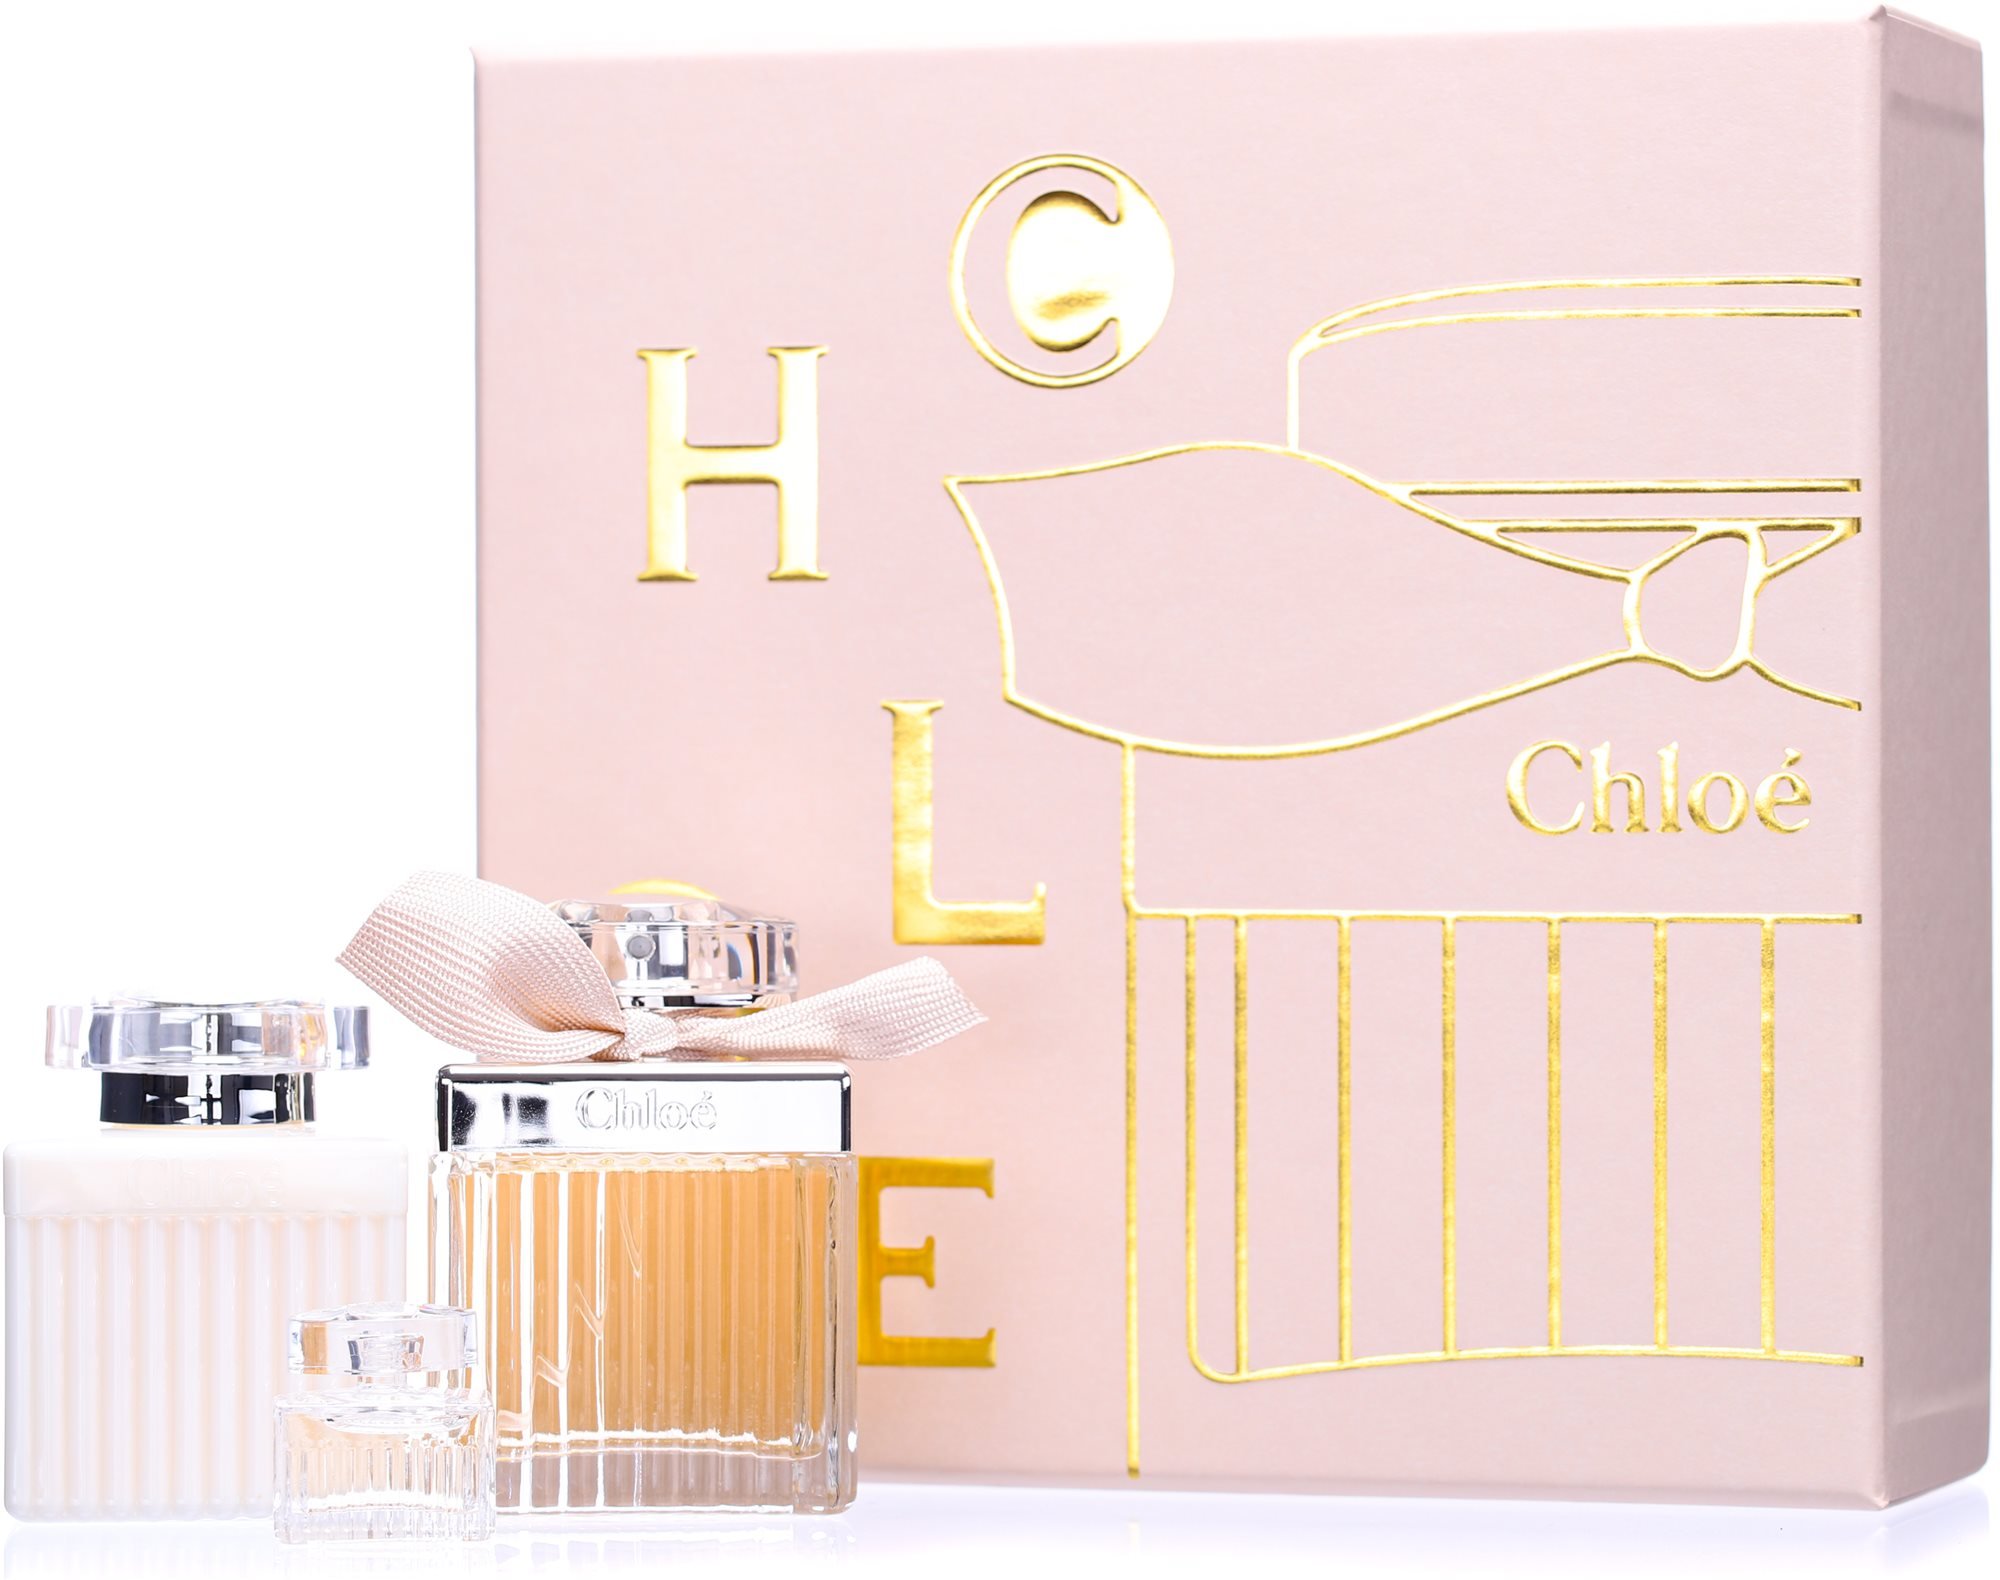 Chloe 2.5 OZ. EDP 3 Piece Gift Set NEW In Gift Box | eBay